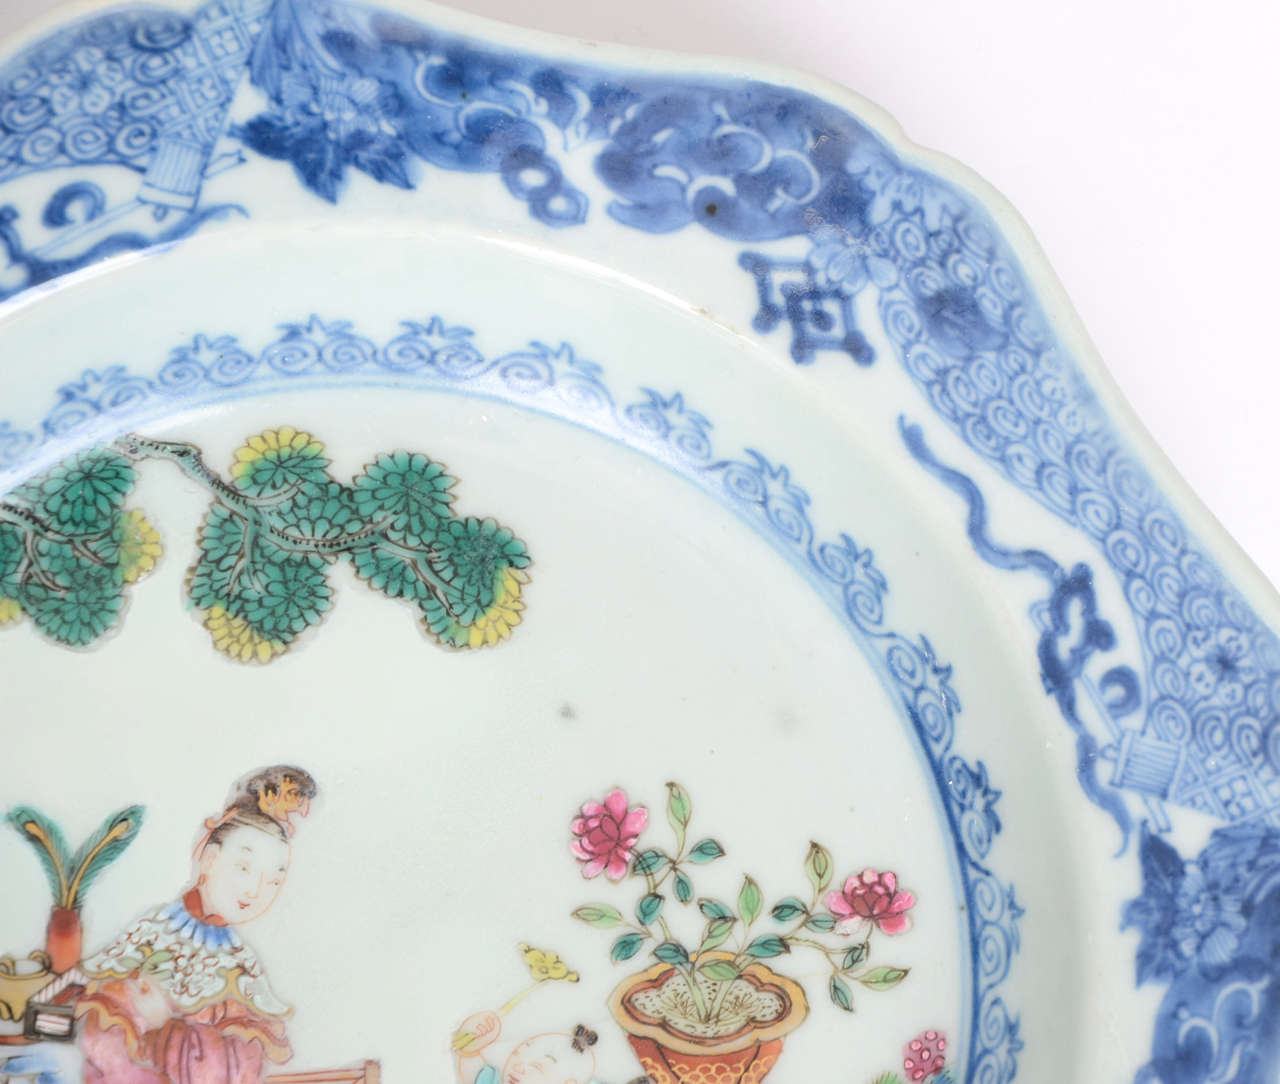 Qing Superb, QING, KANGXI, Chinese, Porcelain, Plate or Bowl, circa 1700